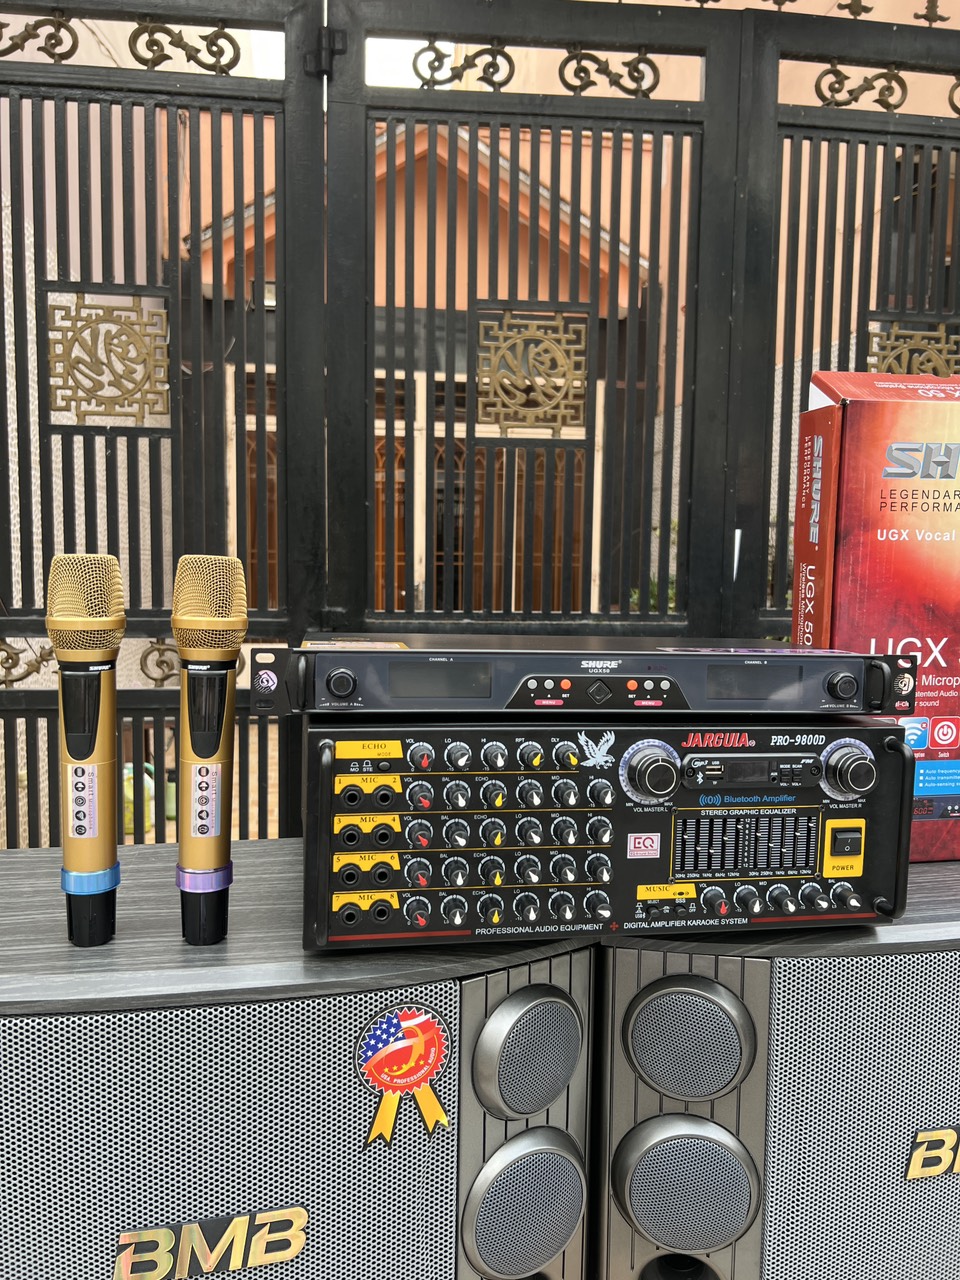 Combo Cặp loa BM + UGX 50 + AMPLY 9800D tặng full dây loa- Dàn loa  thích hợp karaoke nghe nhạc tết